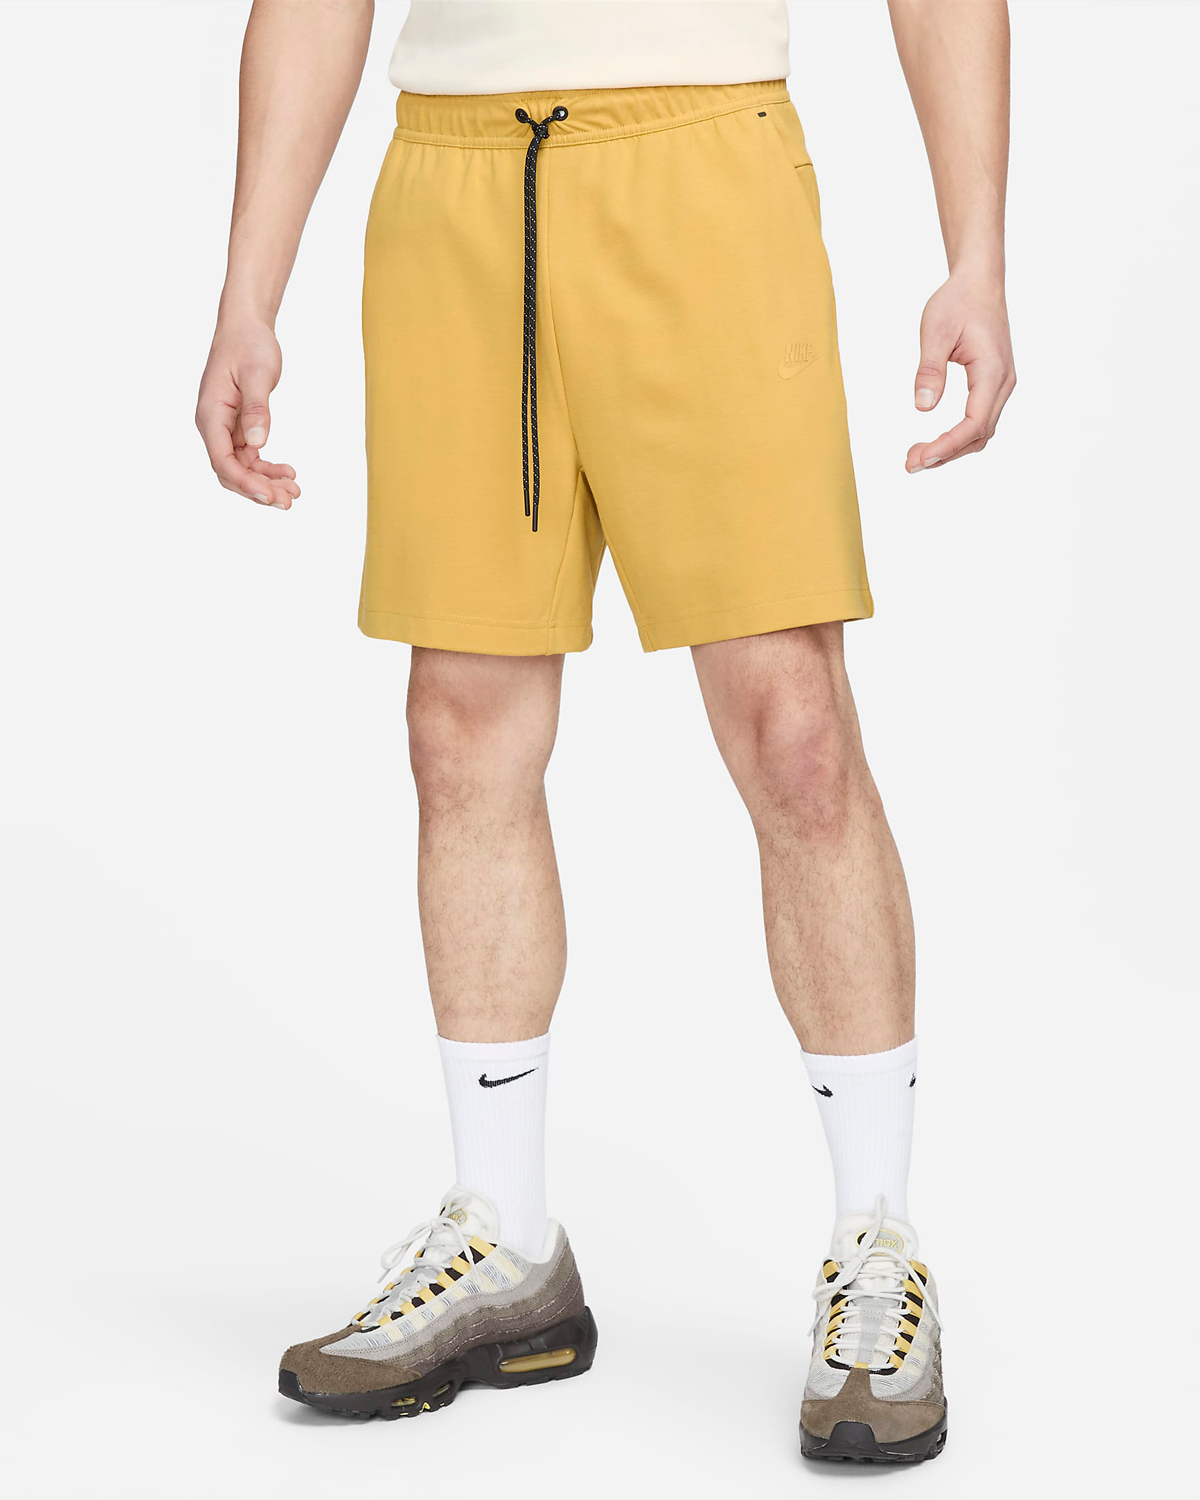 Nike-Tech-Fleece-Lightweight-Shorts-Wheat-Gold